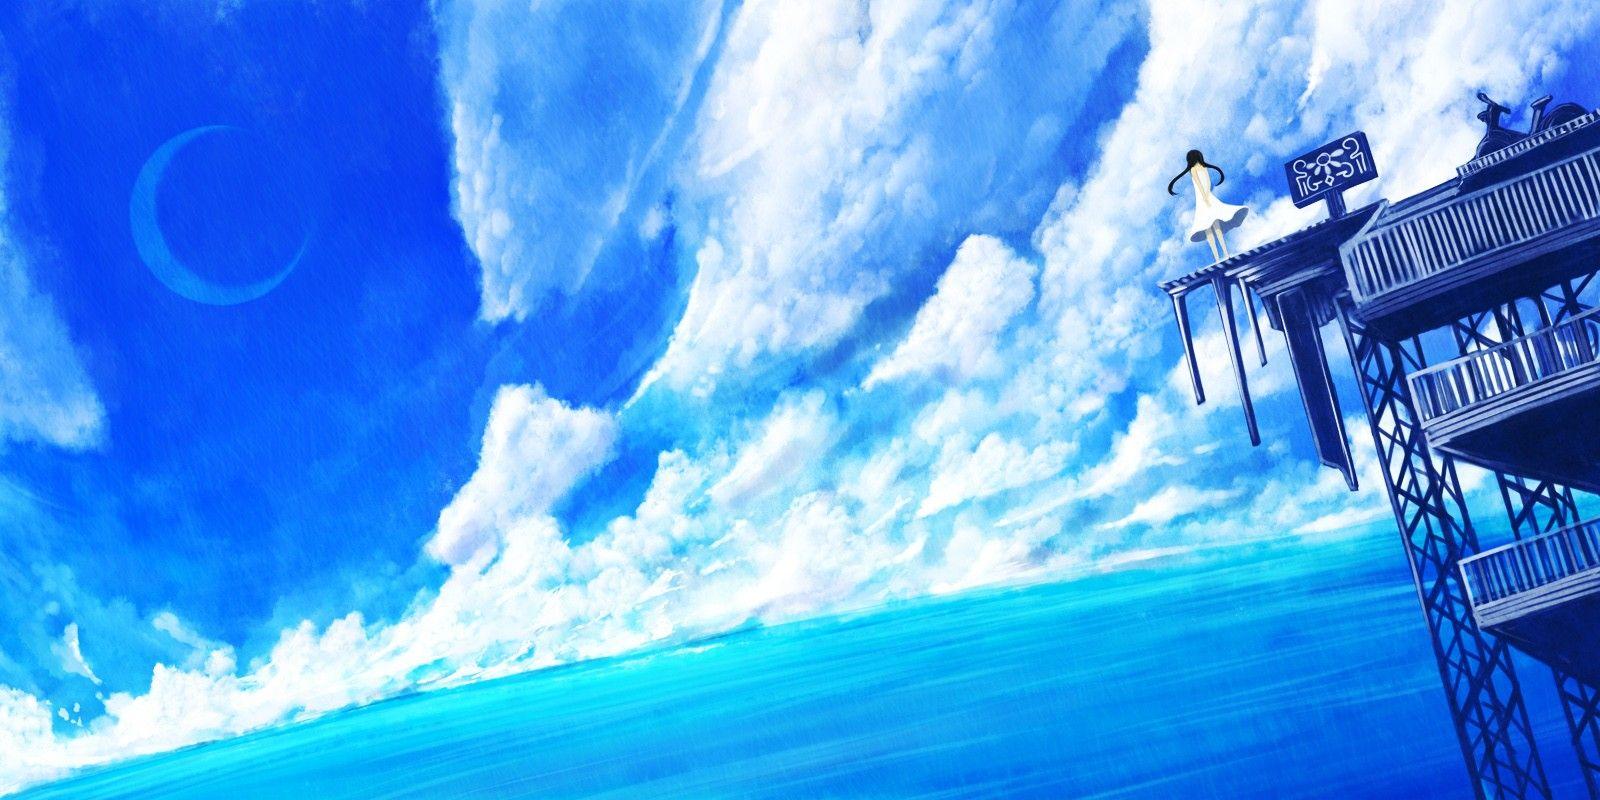 Đại dương anime xanh là thế giới của những loài vật kì diệu và những cảnh vật ngoạn mục. Với những bức tranh anime, bạn sẽ được trải nghiệm một thế giới đầy màu sắc và cảm xúc.